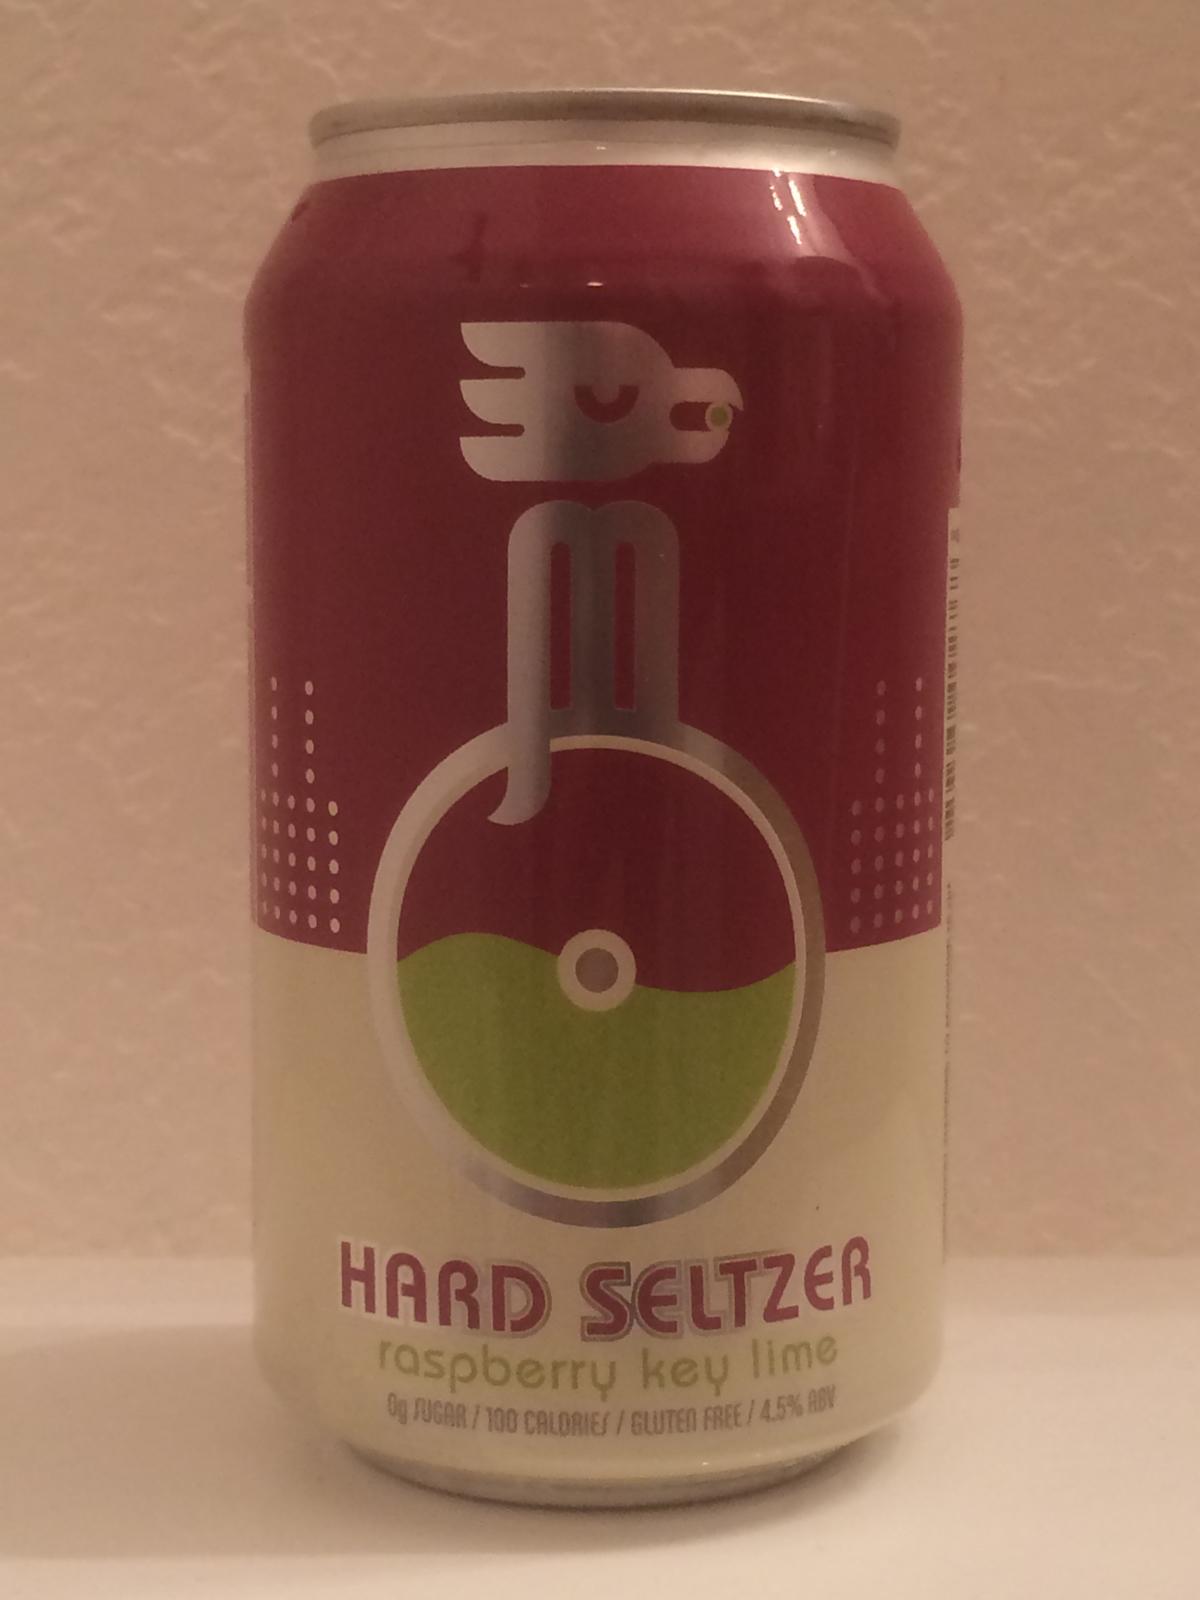 Hard Seltzer Raspberry Key Lime